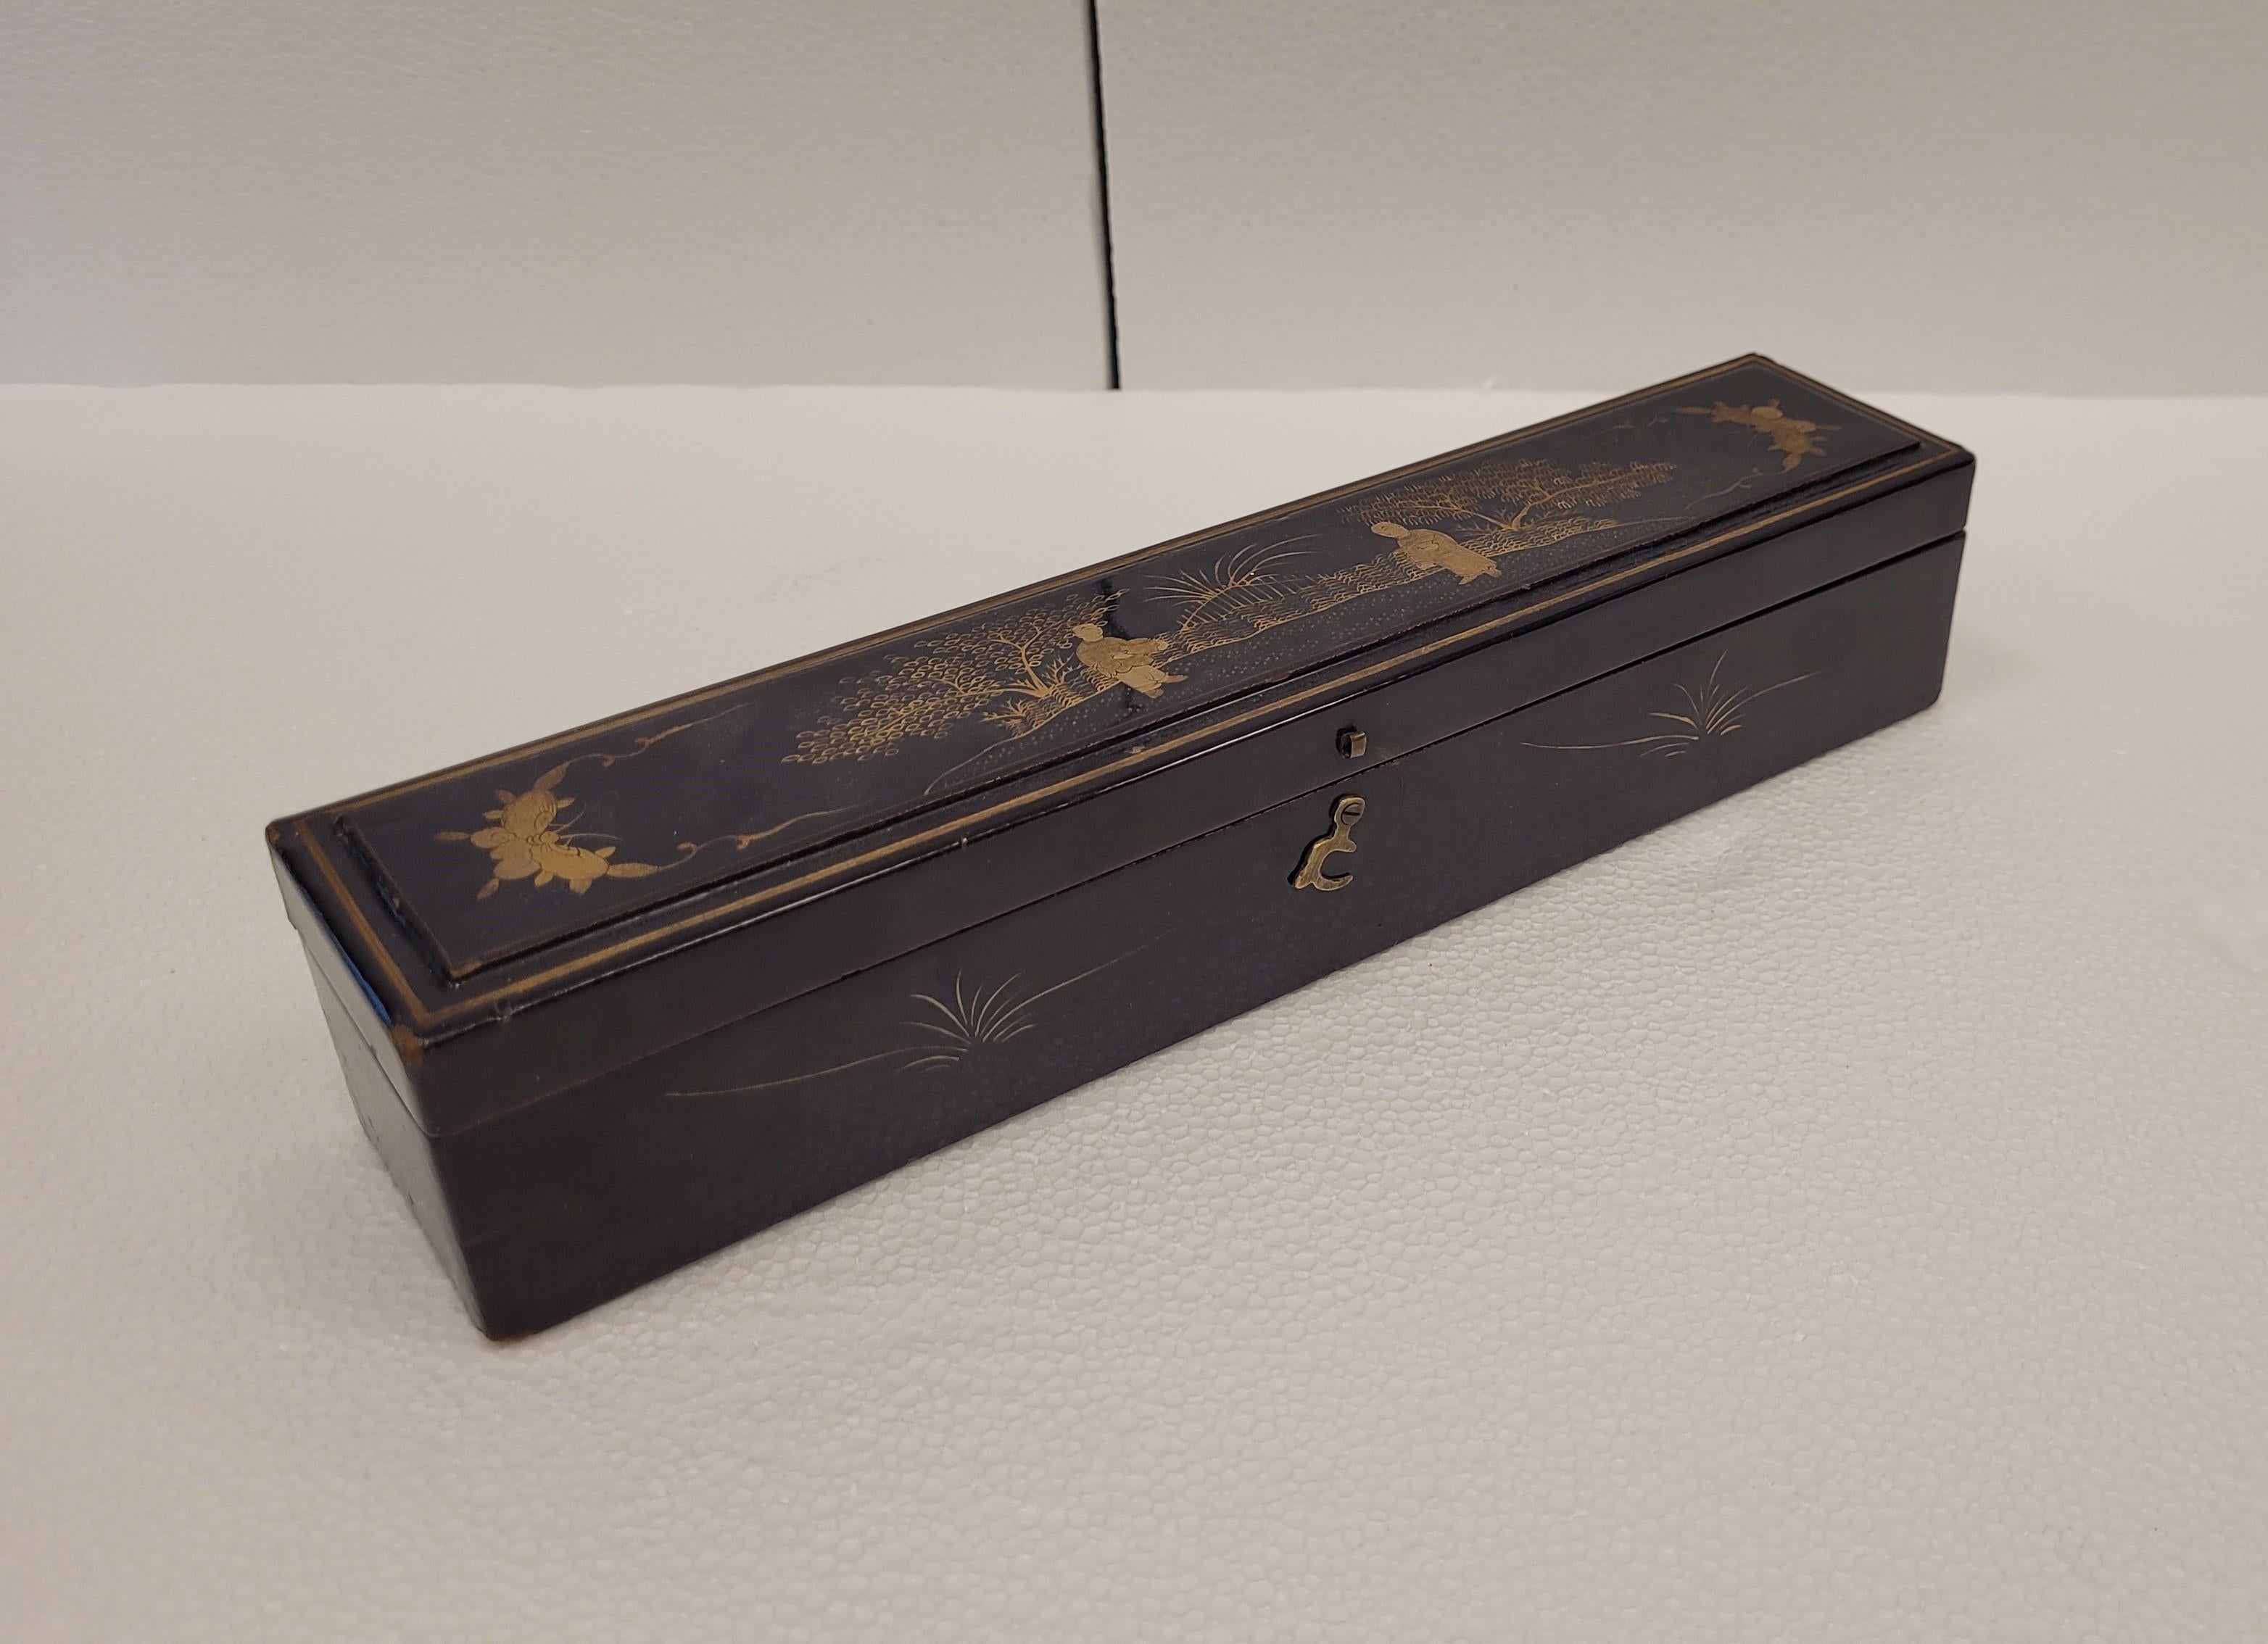 Chinesische Conchinoiserien Kiste in schwarz lackiertem Holz und Seide Interieur
Exquisite und schöne chinesische Kiste aus lackiertem Holz mit goldenen Chinoiserien, die verschiedene chinesische Bräuche darstellen.
Innen ist die Box mit